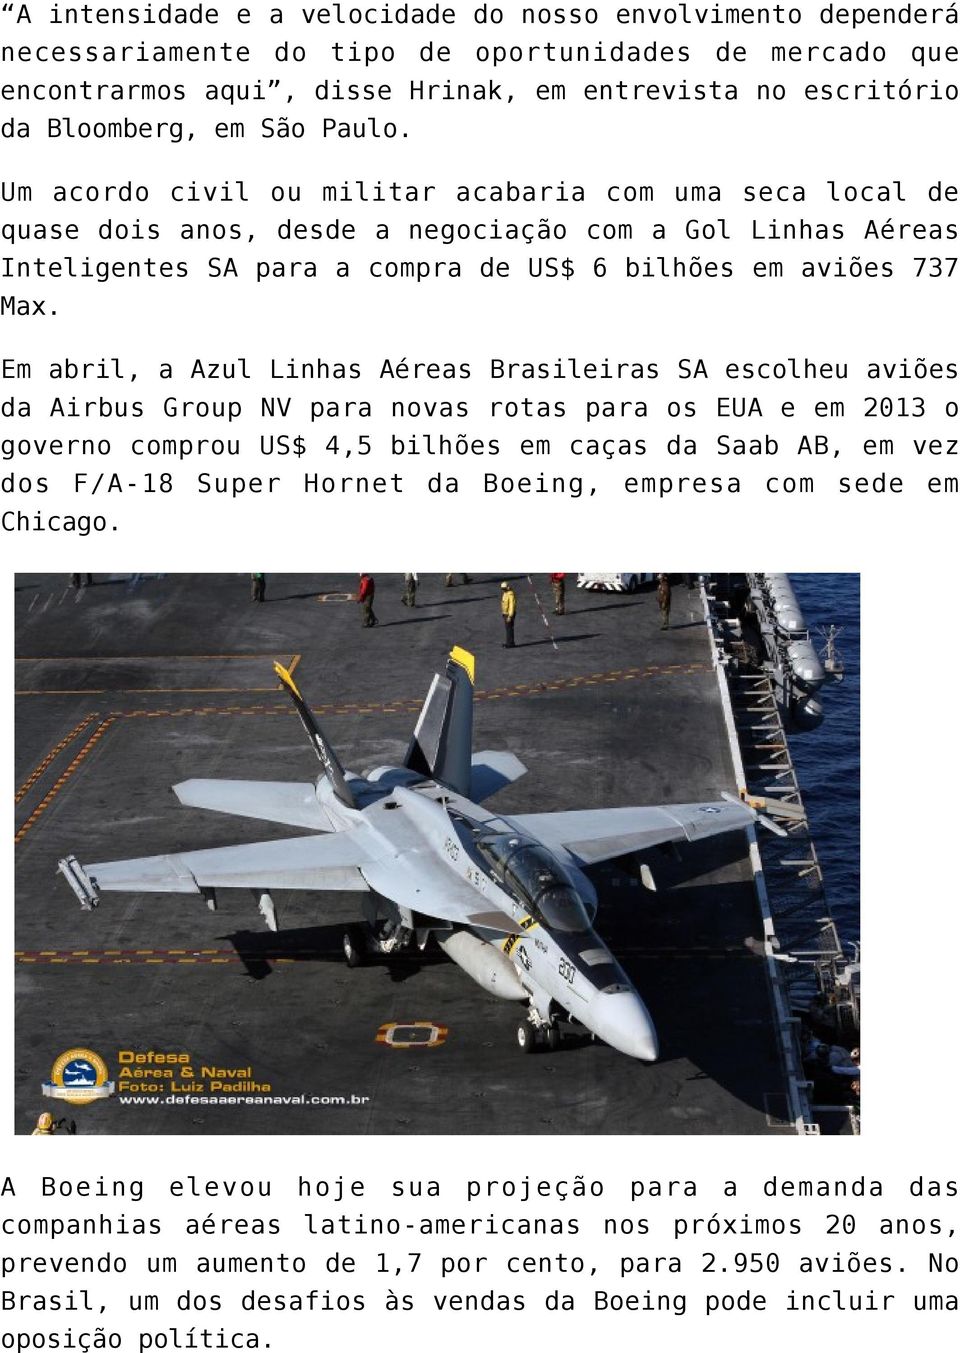 Em abril, a Azul Linhas Aéreas Brasileiras SA escolheu aviões da Airbus Group NV para novas rotas para os EUA e em 2013 o governo comprou US$ 4,5 bilhões em caças da Saab AB, em vez dos F/A-18 Super